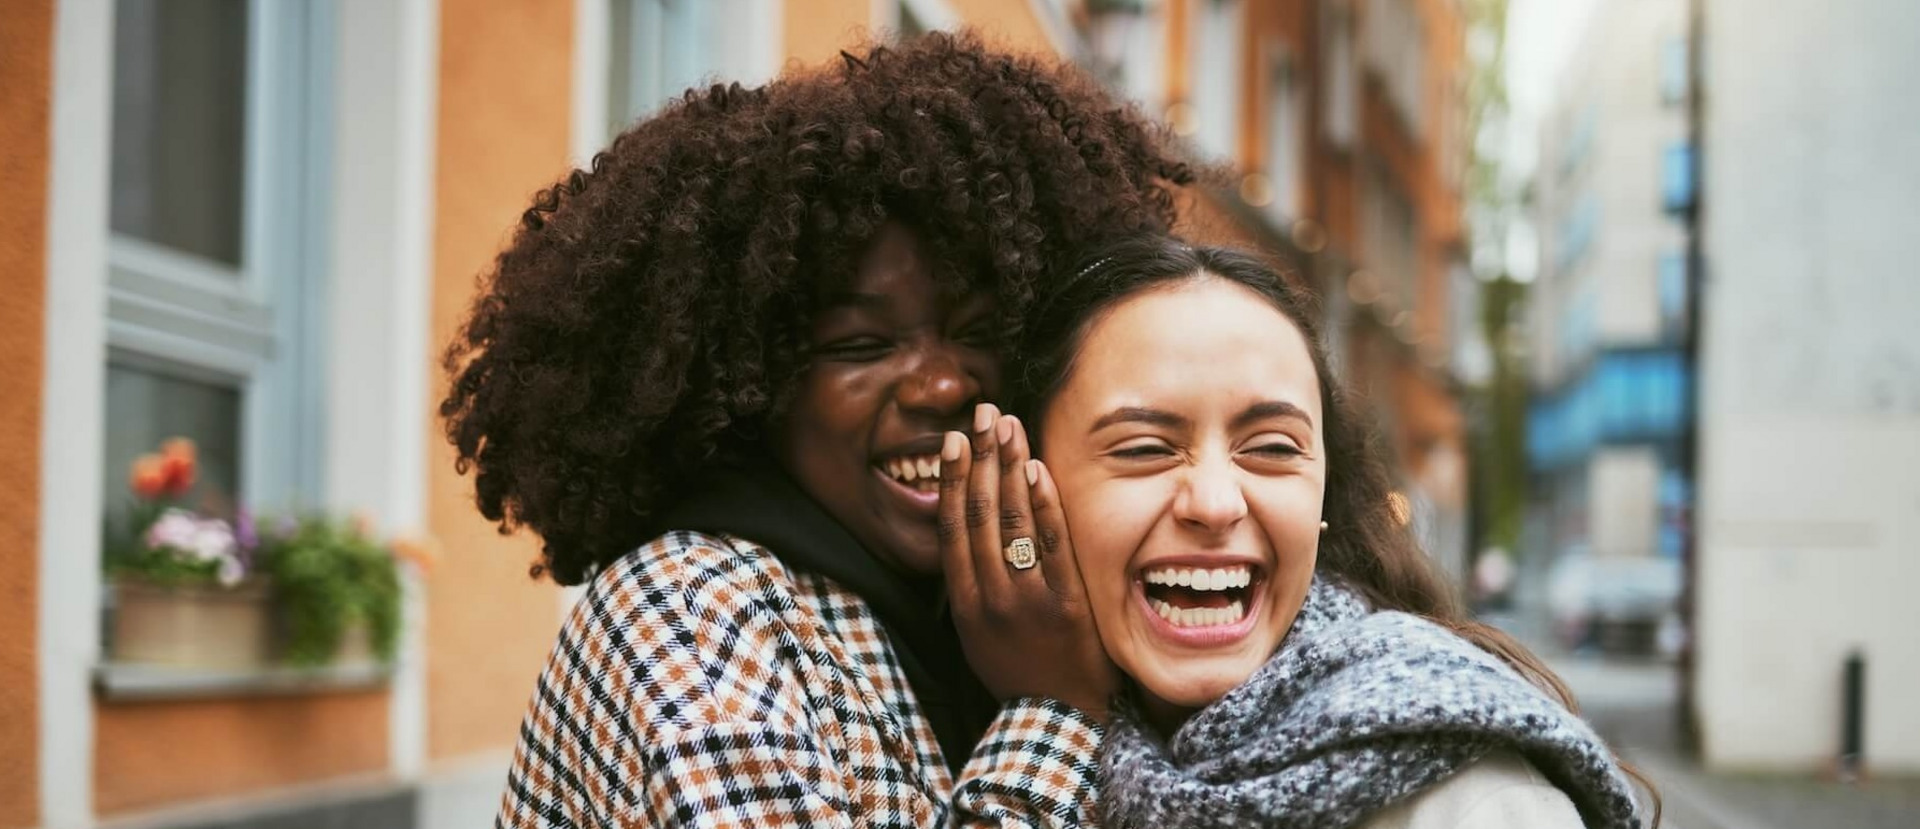 Eine junge Frau flüstert einer Freundin etwas ins Ohr, sie lacht